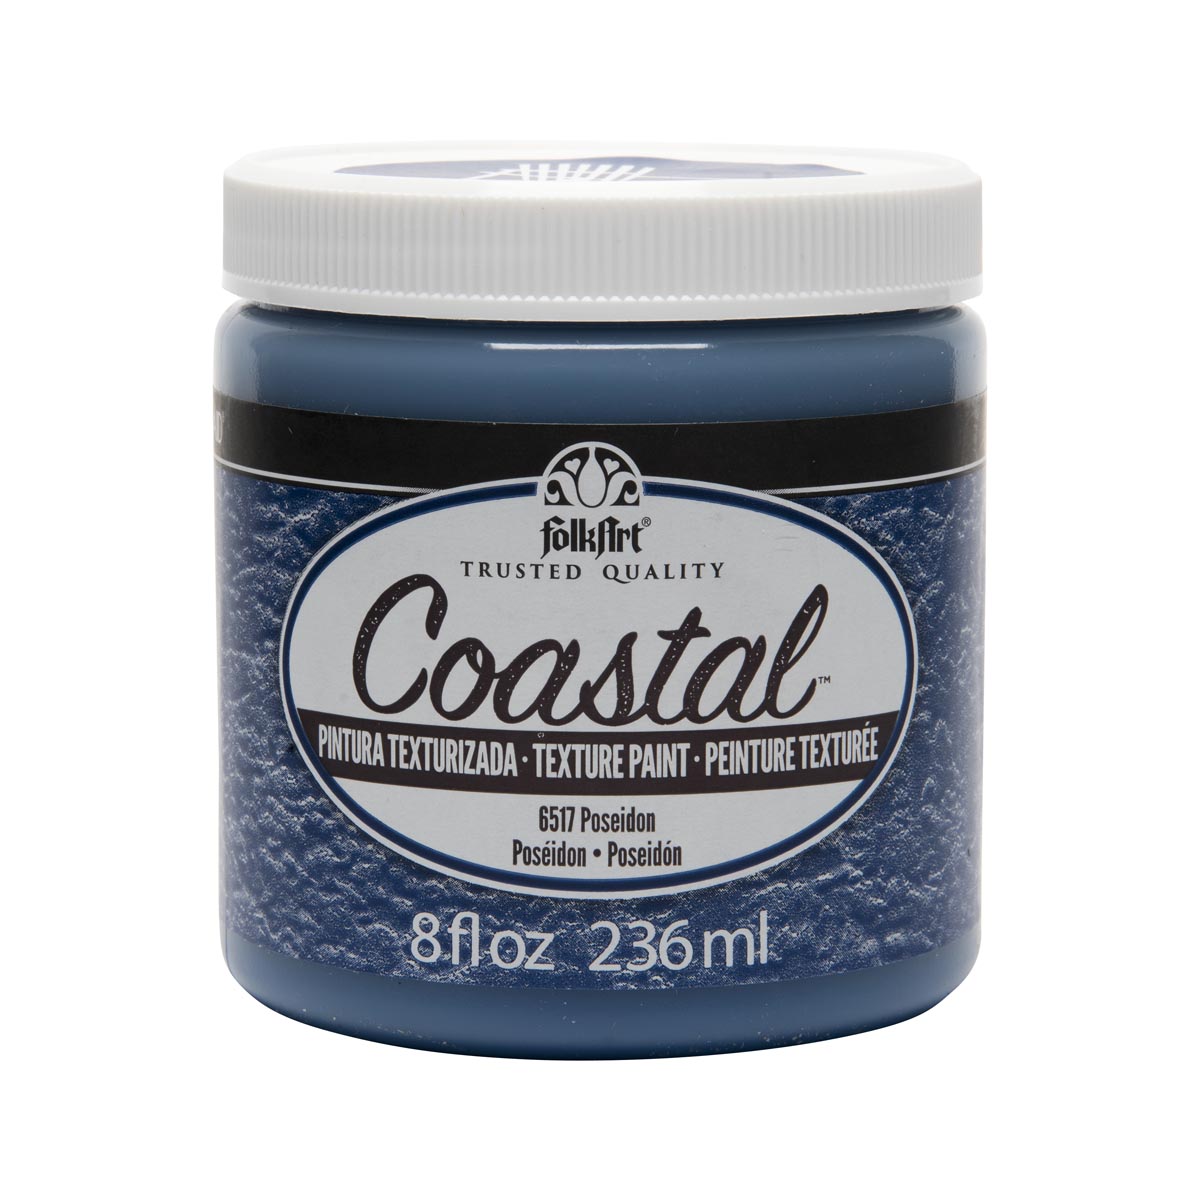 FolkArt ® Coastal™ Texture Paint - Poseidon, 8 oz. - 6517